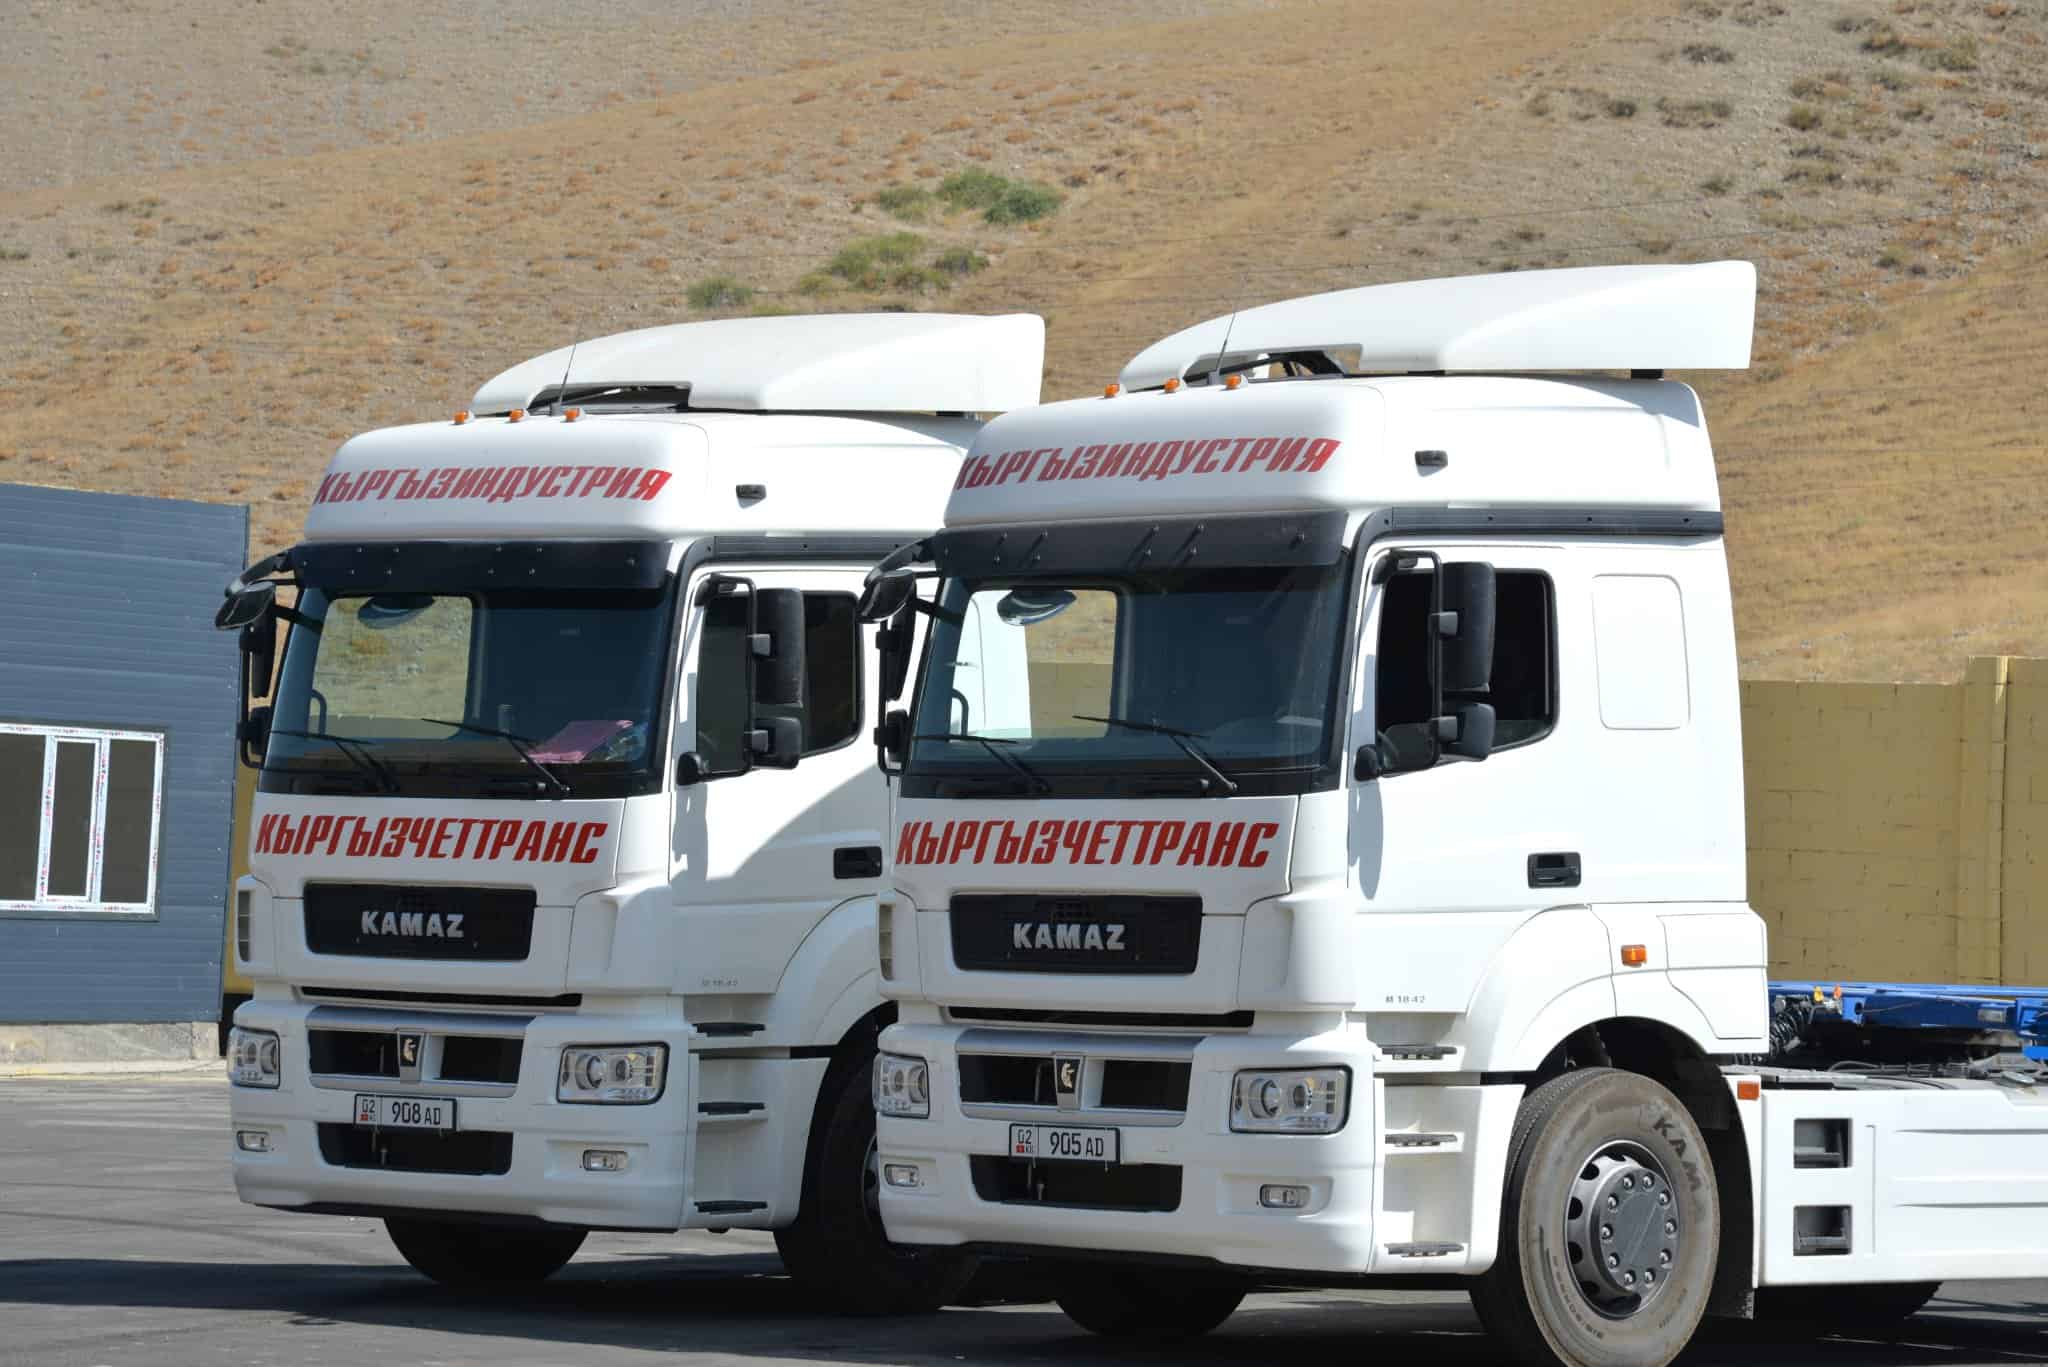 «Кыргызчеттранс-Ош» строит транспортно-логистическую автобазу